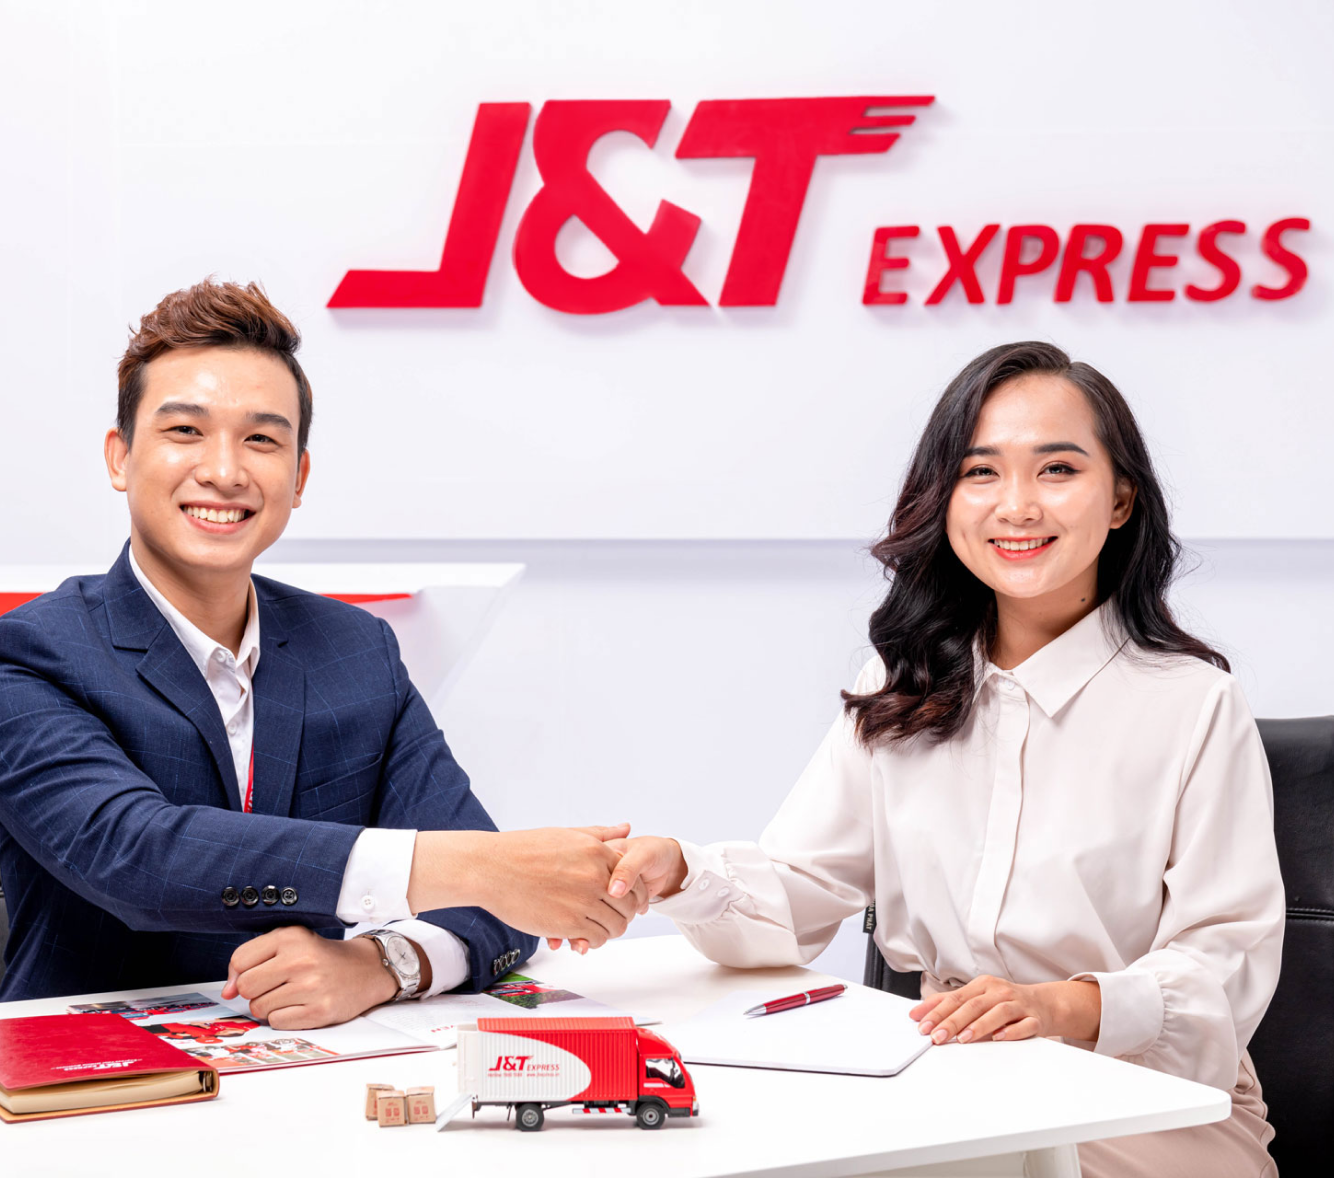 J&T Express Việt Nam - Nhượng quyền thương hiệu